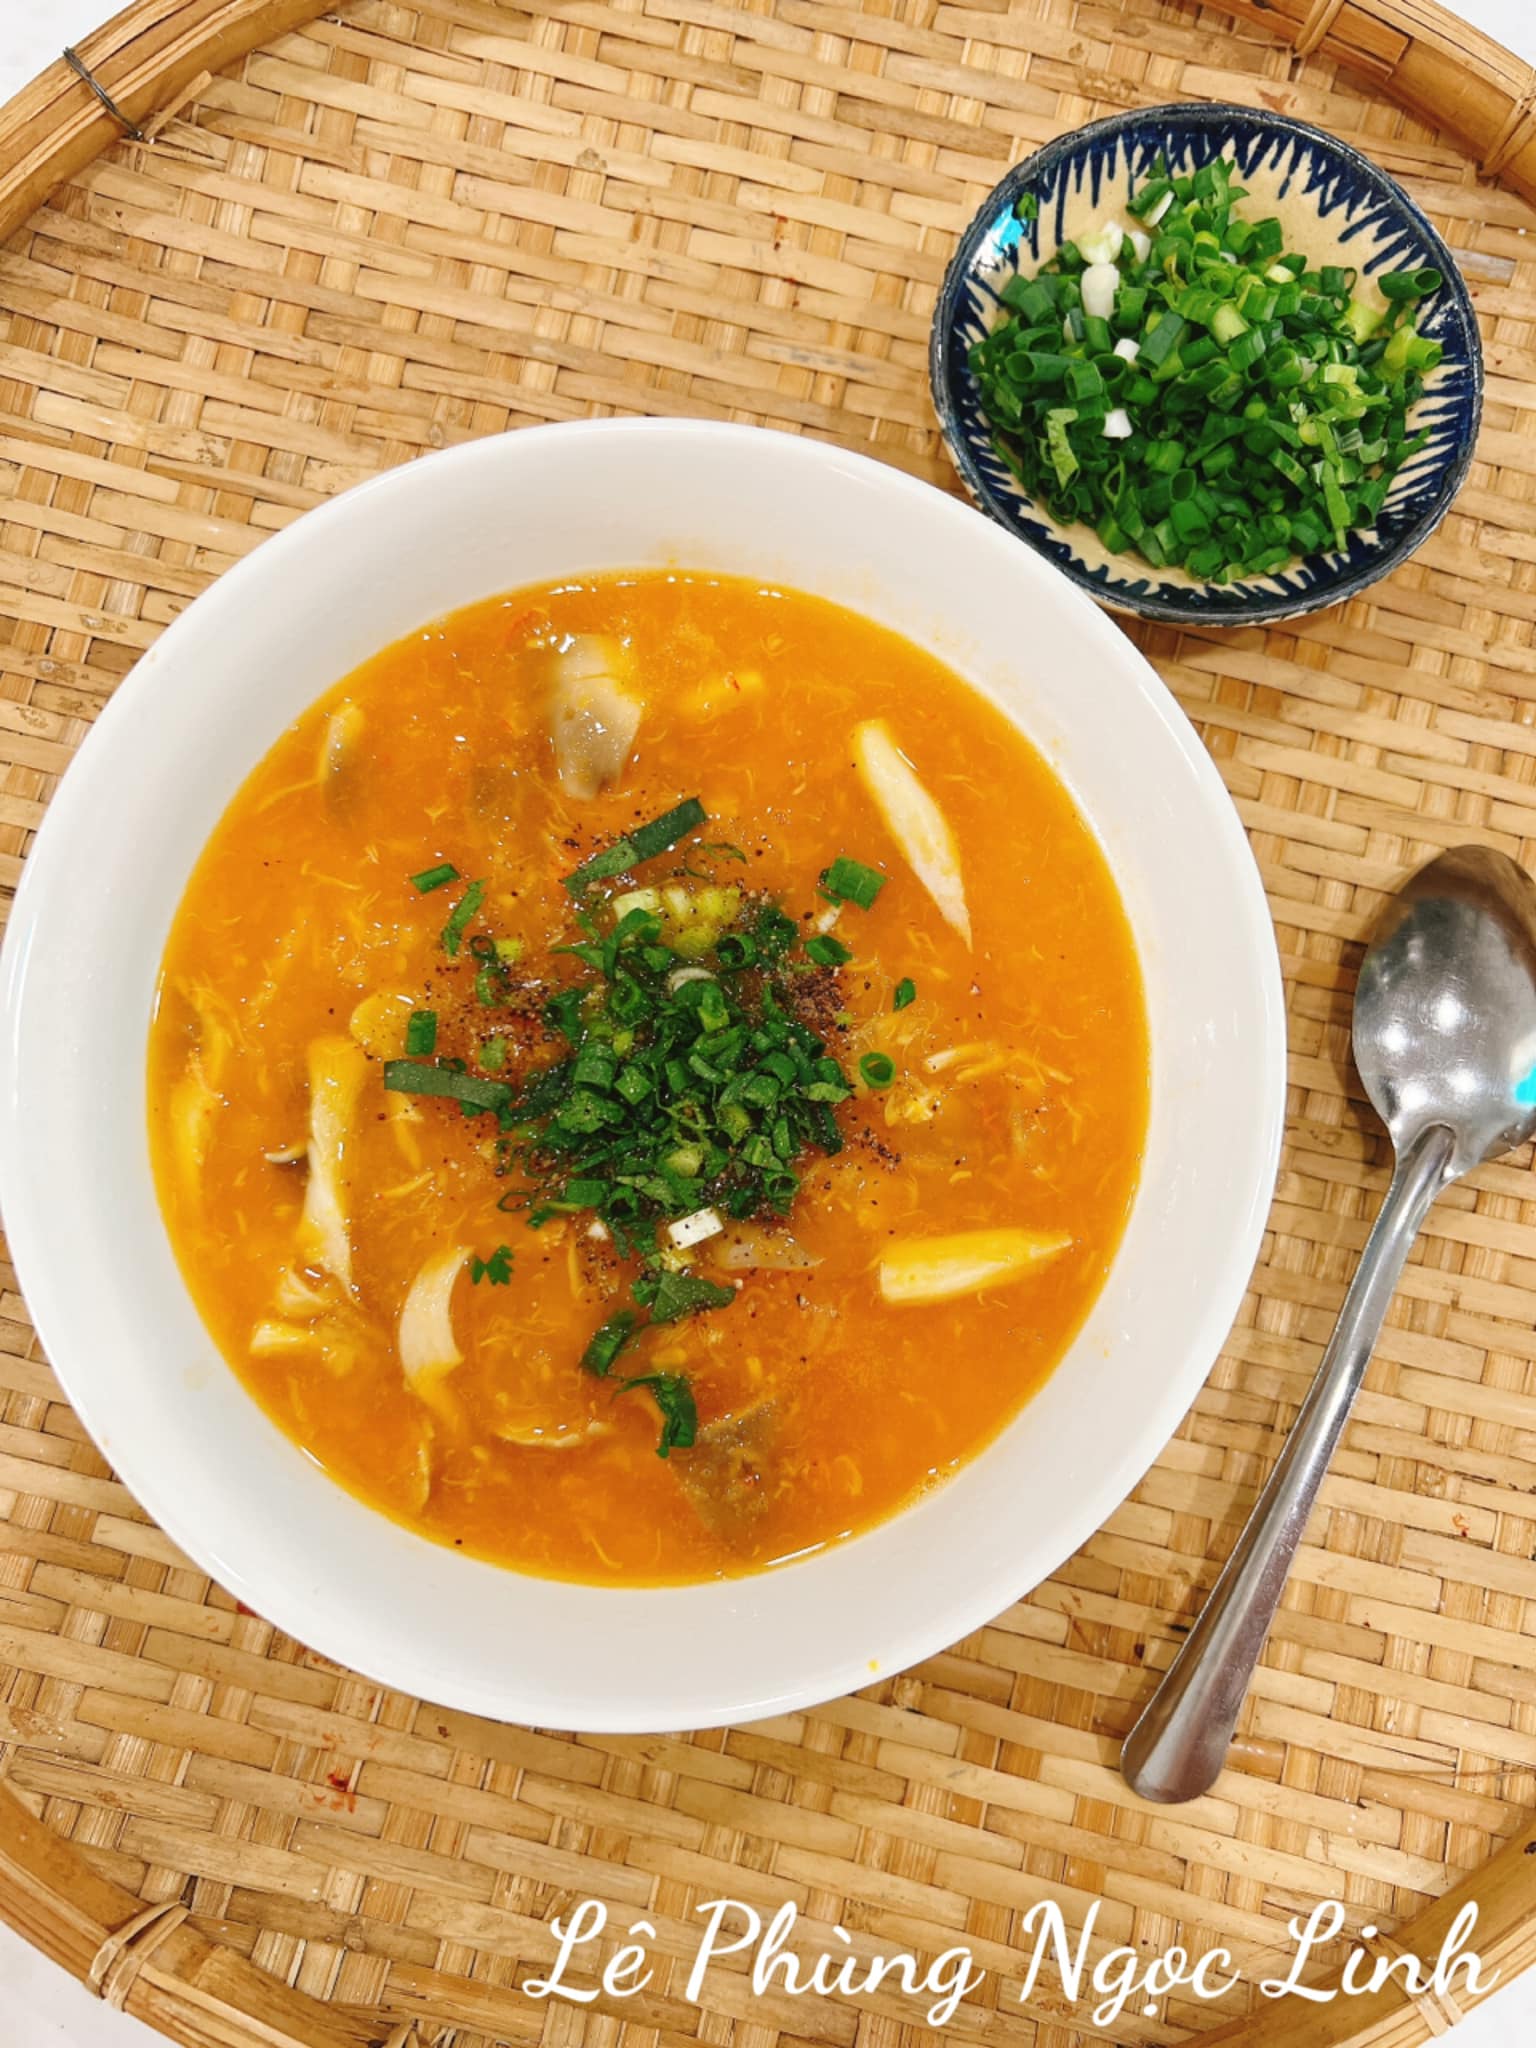  Cách nấu súp bí đỏ khoai mì: Bát súp thơm ngon, màu sắc hấp dẫn.